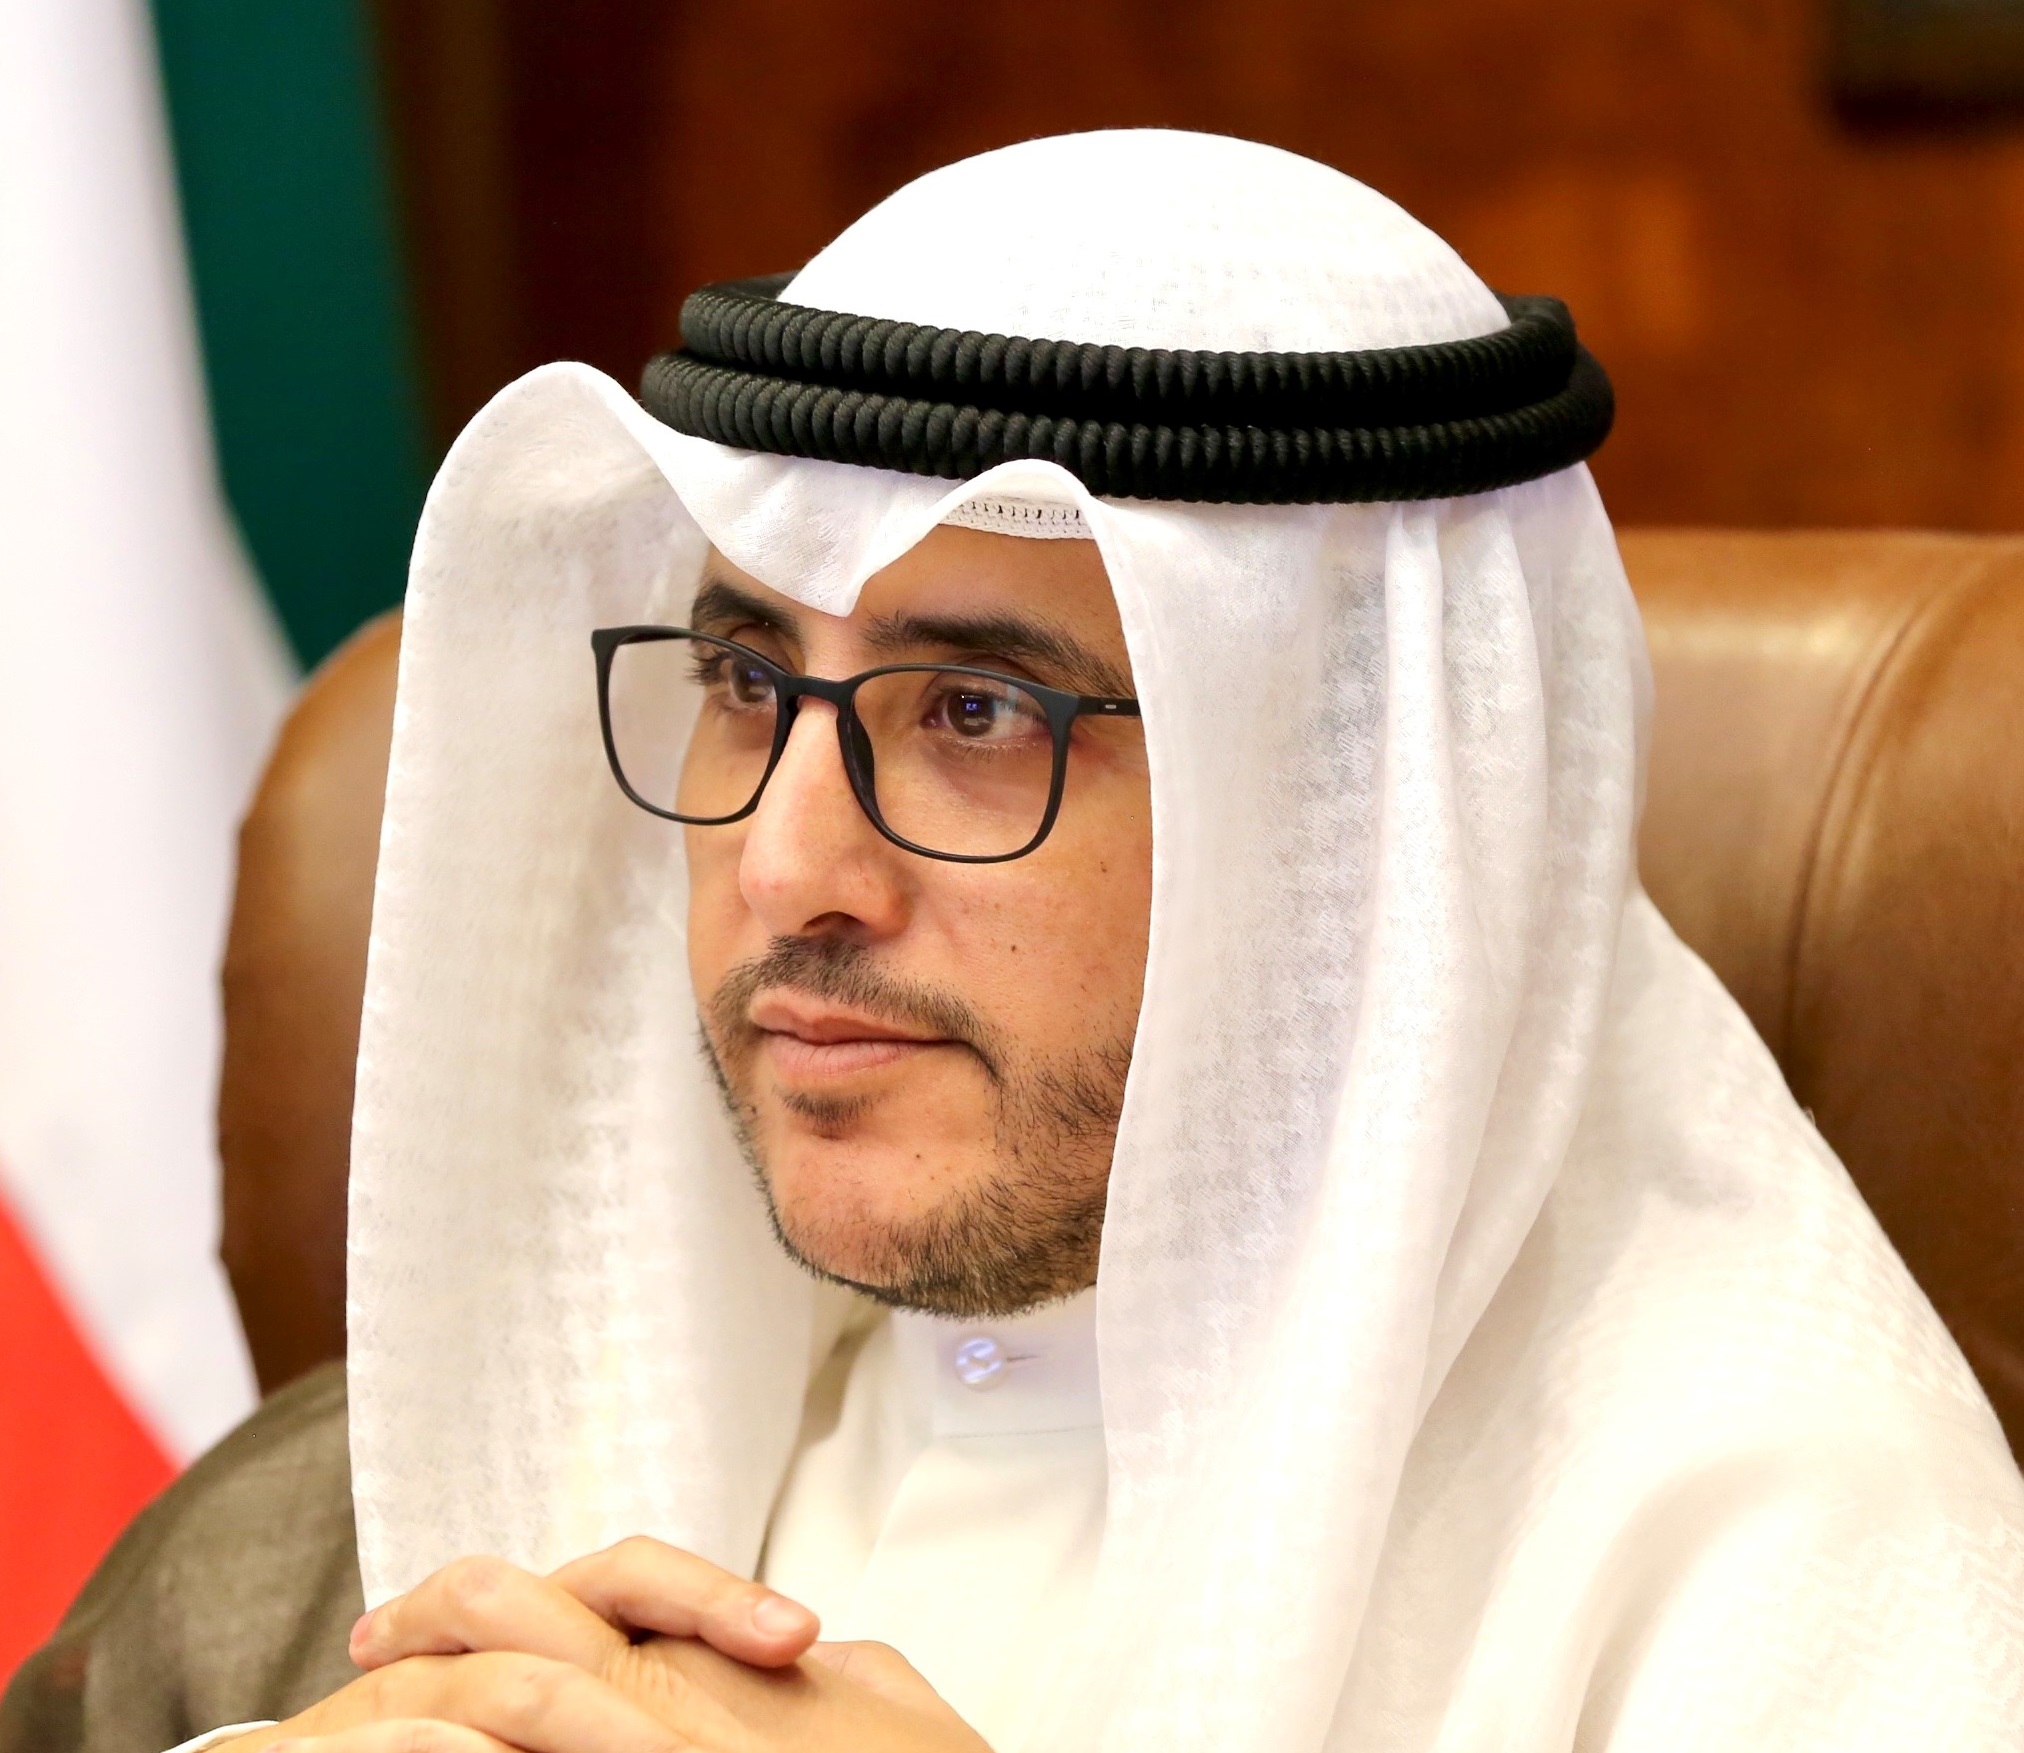 الكويت تعلن عن تسليم لبنان مقترحات جديدة بشأن إعادة بناء الثقة مع بيروت بعد أزمة قرداحي